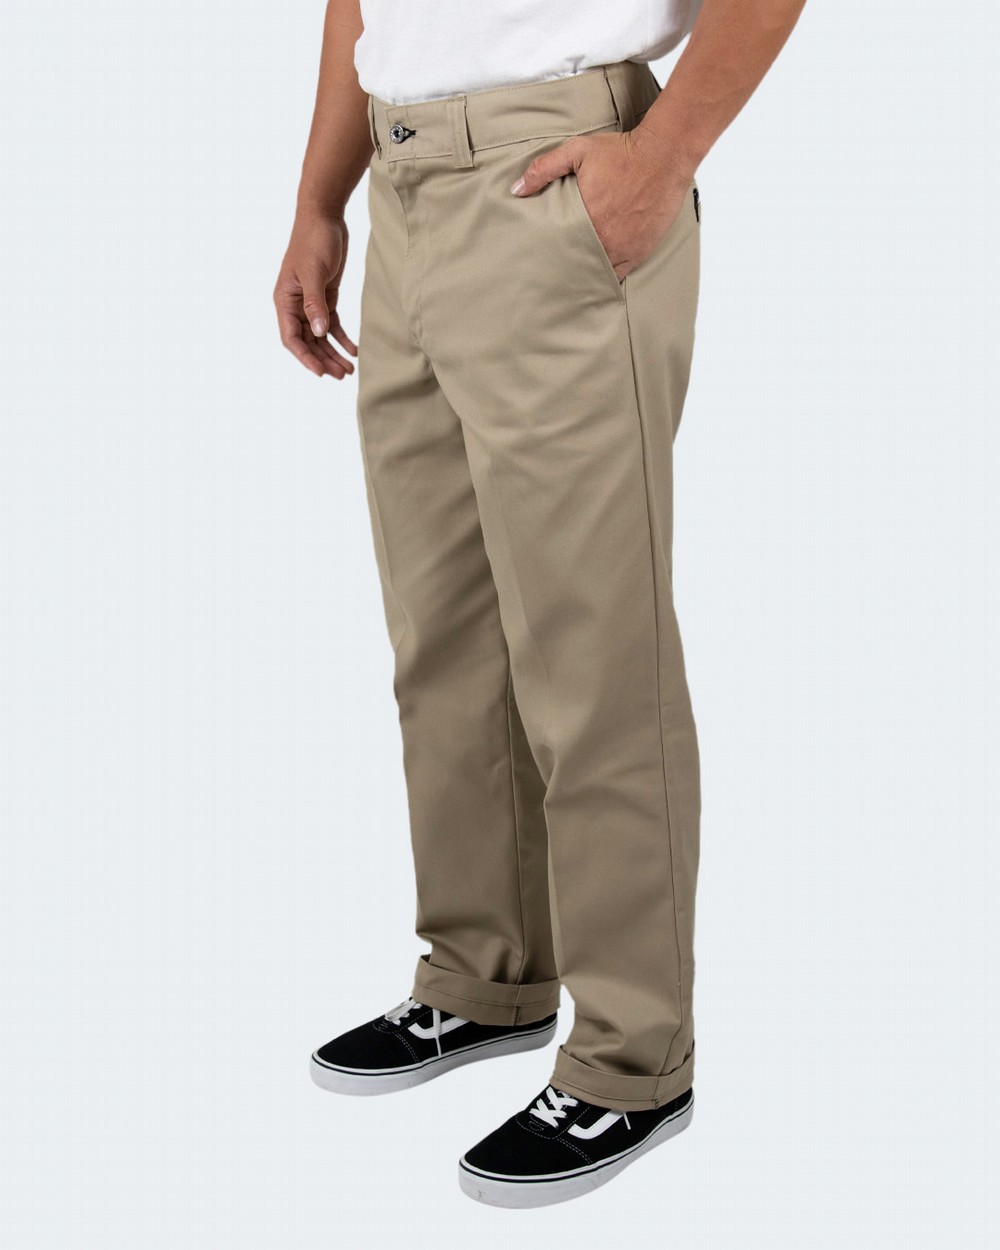 Dewalt Mens Pro Tradesman Work Pants - Walmart.com